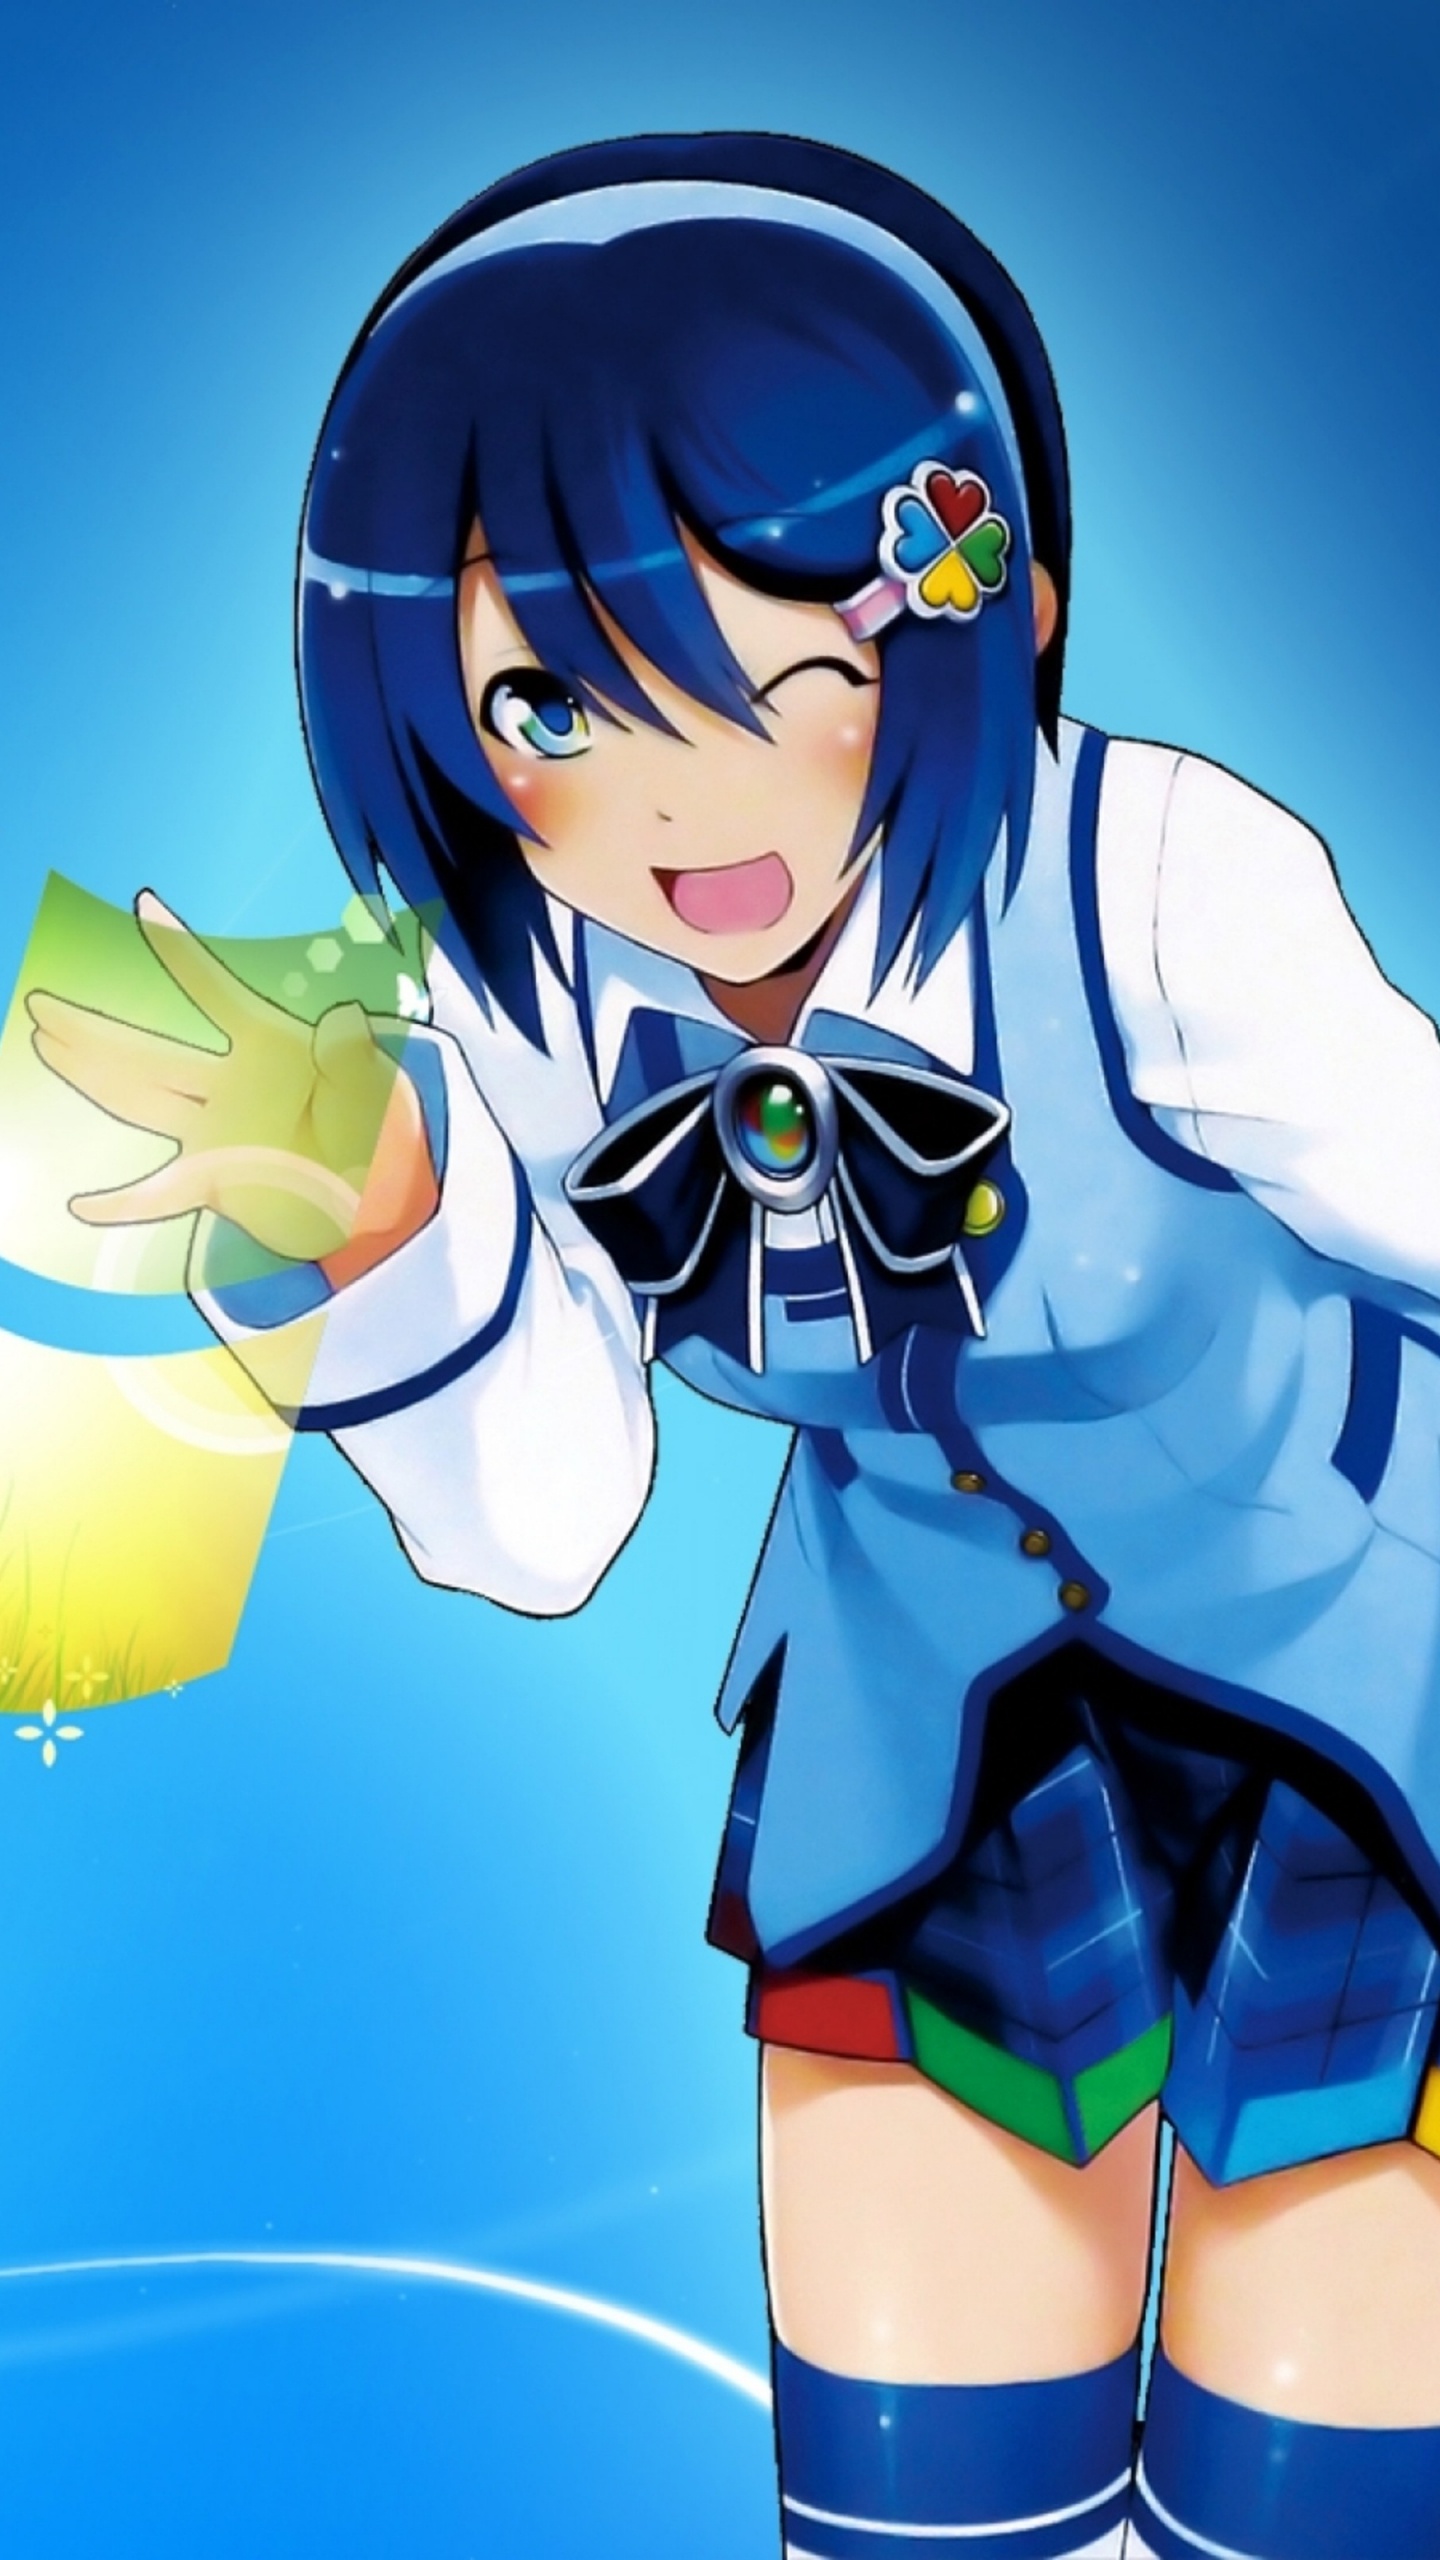 Mujer en Uniforme Escolar Azul y Blanco Personaje de Anime. Wallpaper in 1440x2560 Resolution